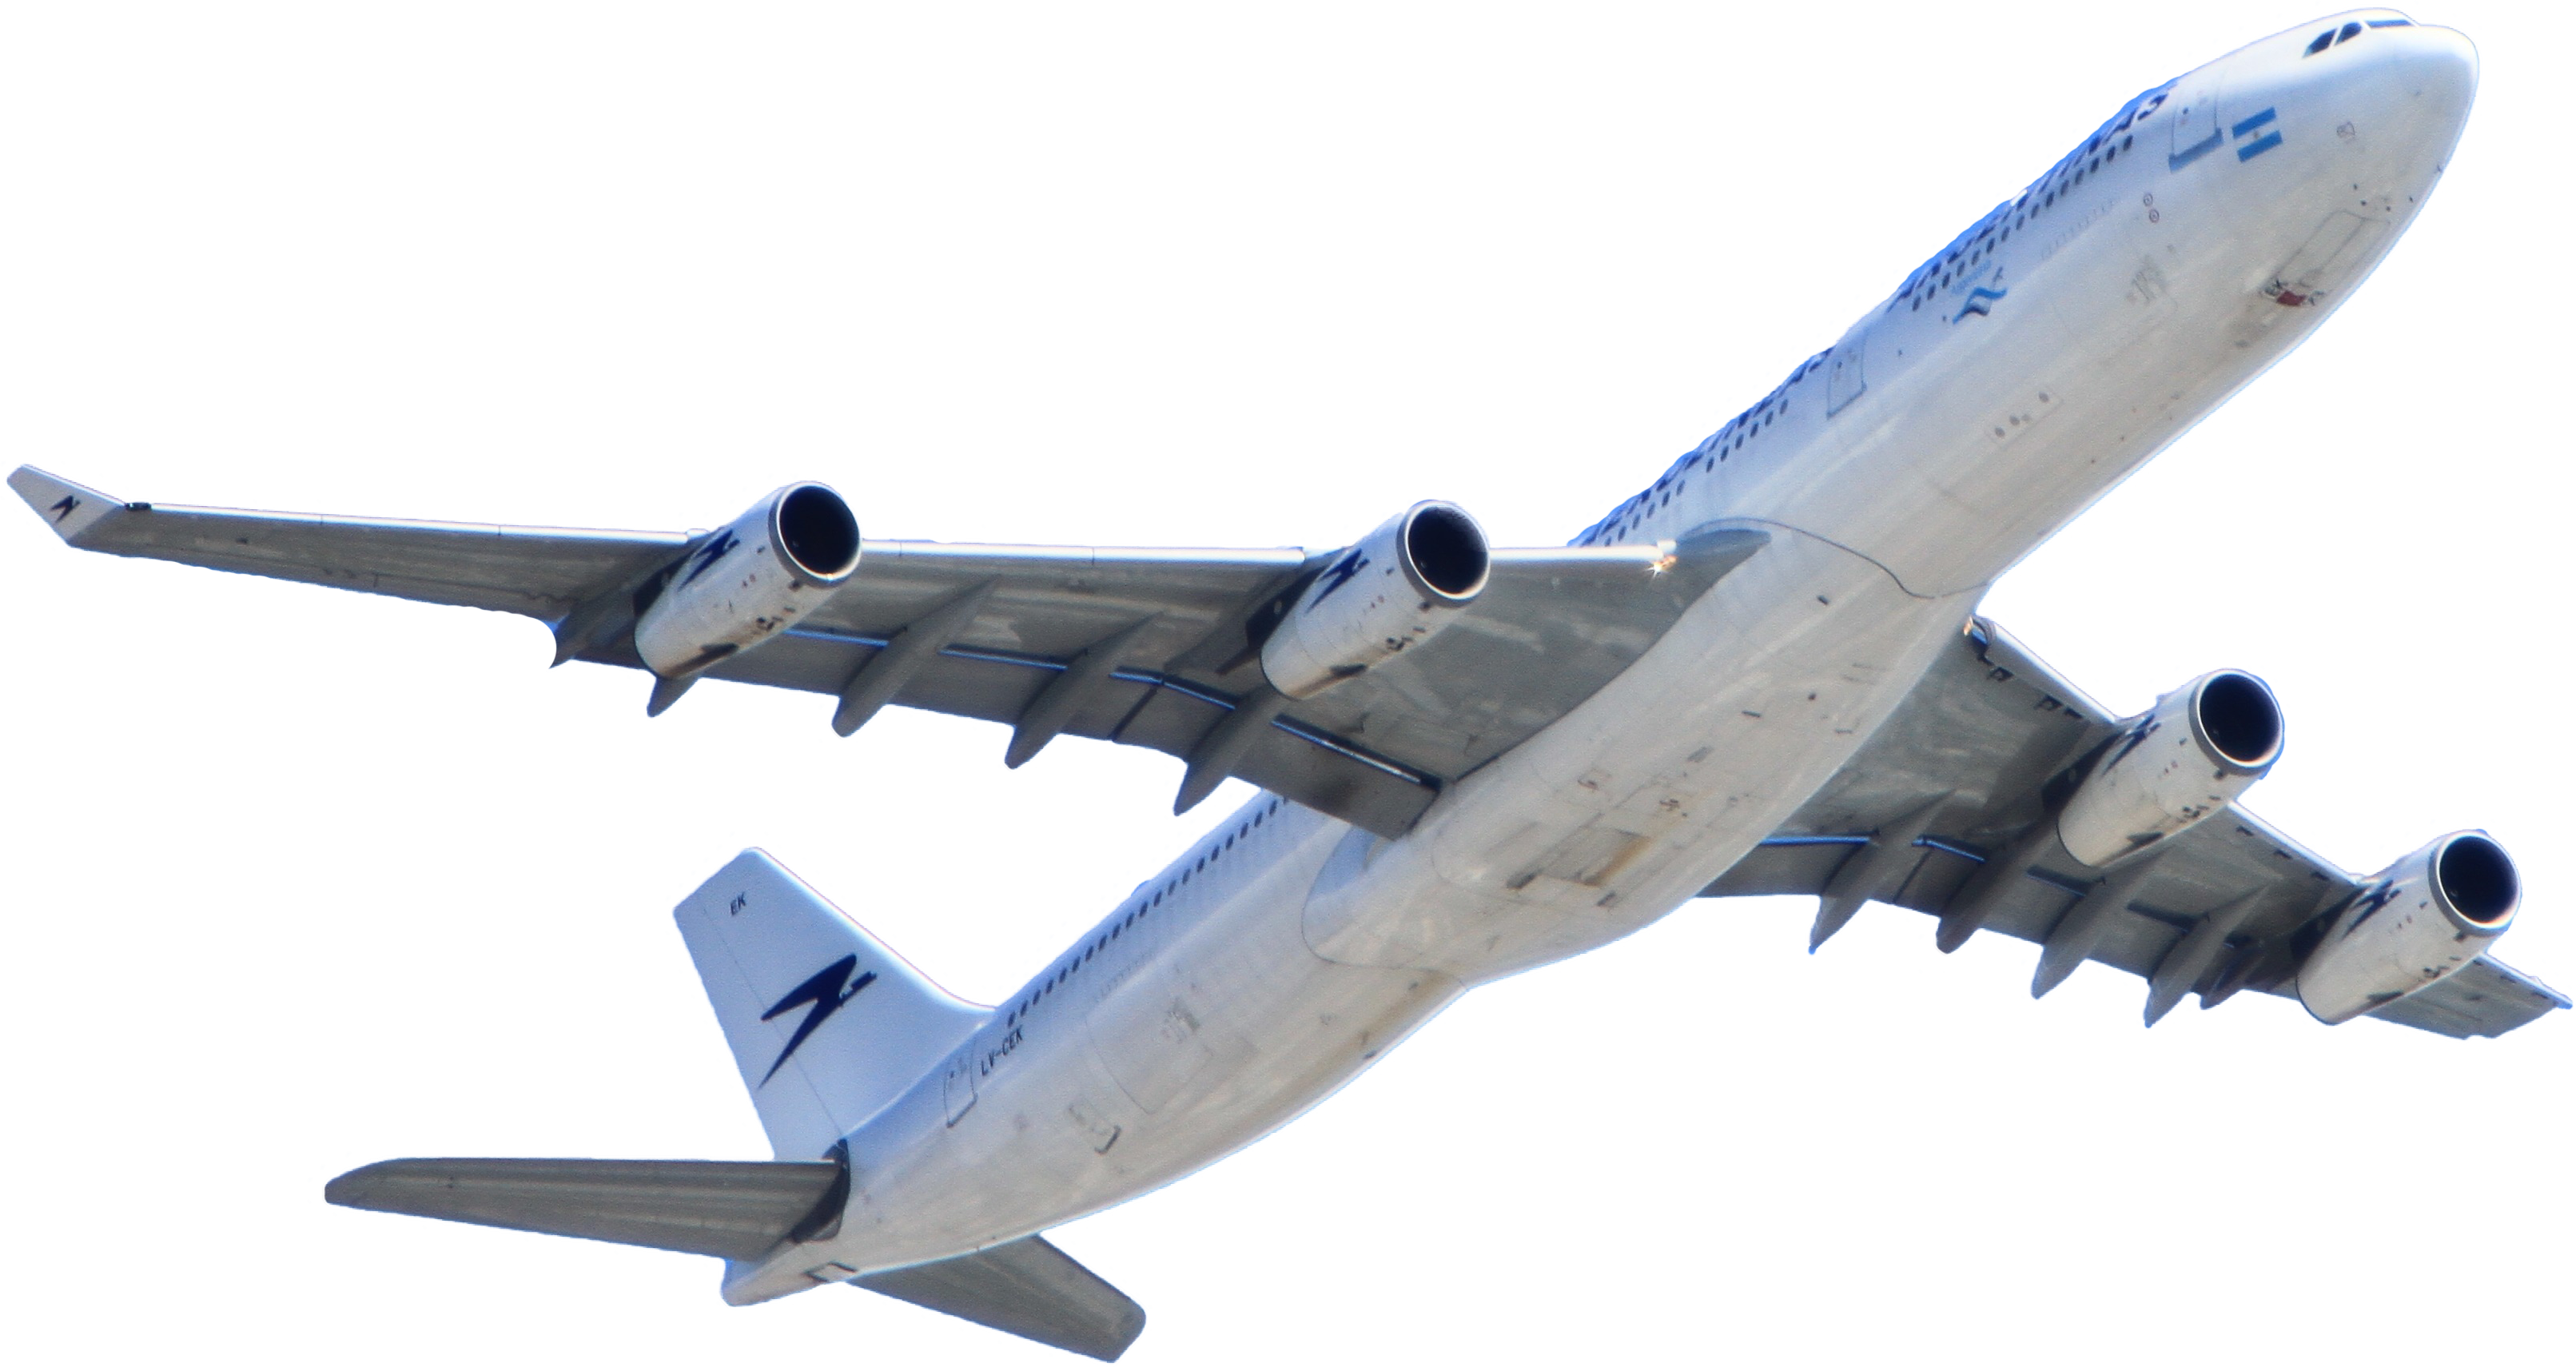 White Passenger Plane Flying on Sky PNG Image